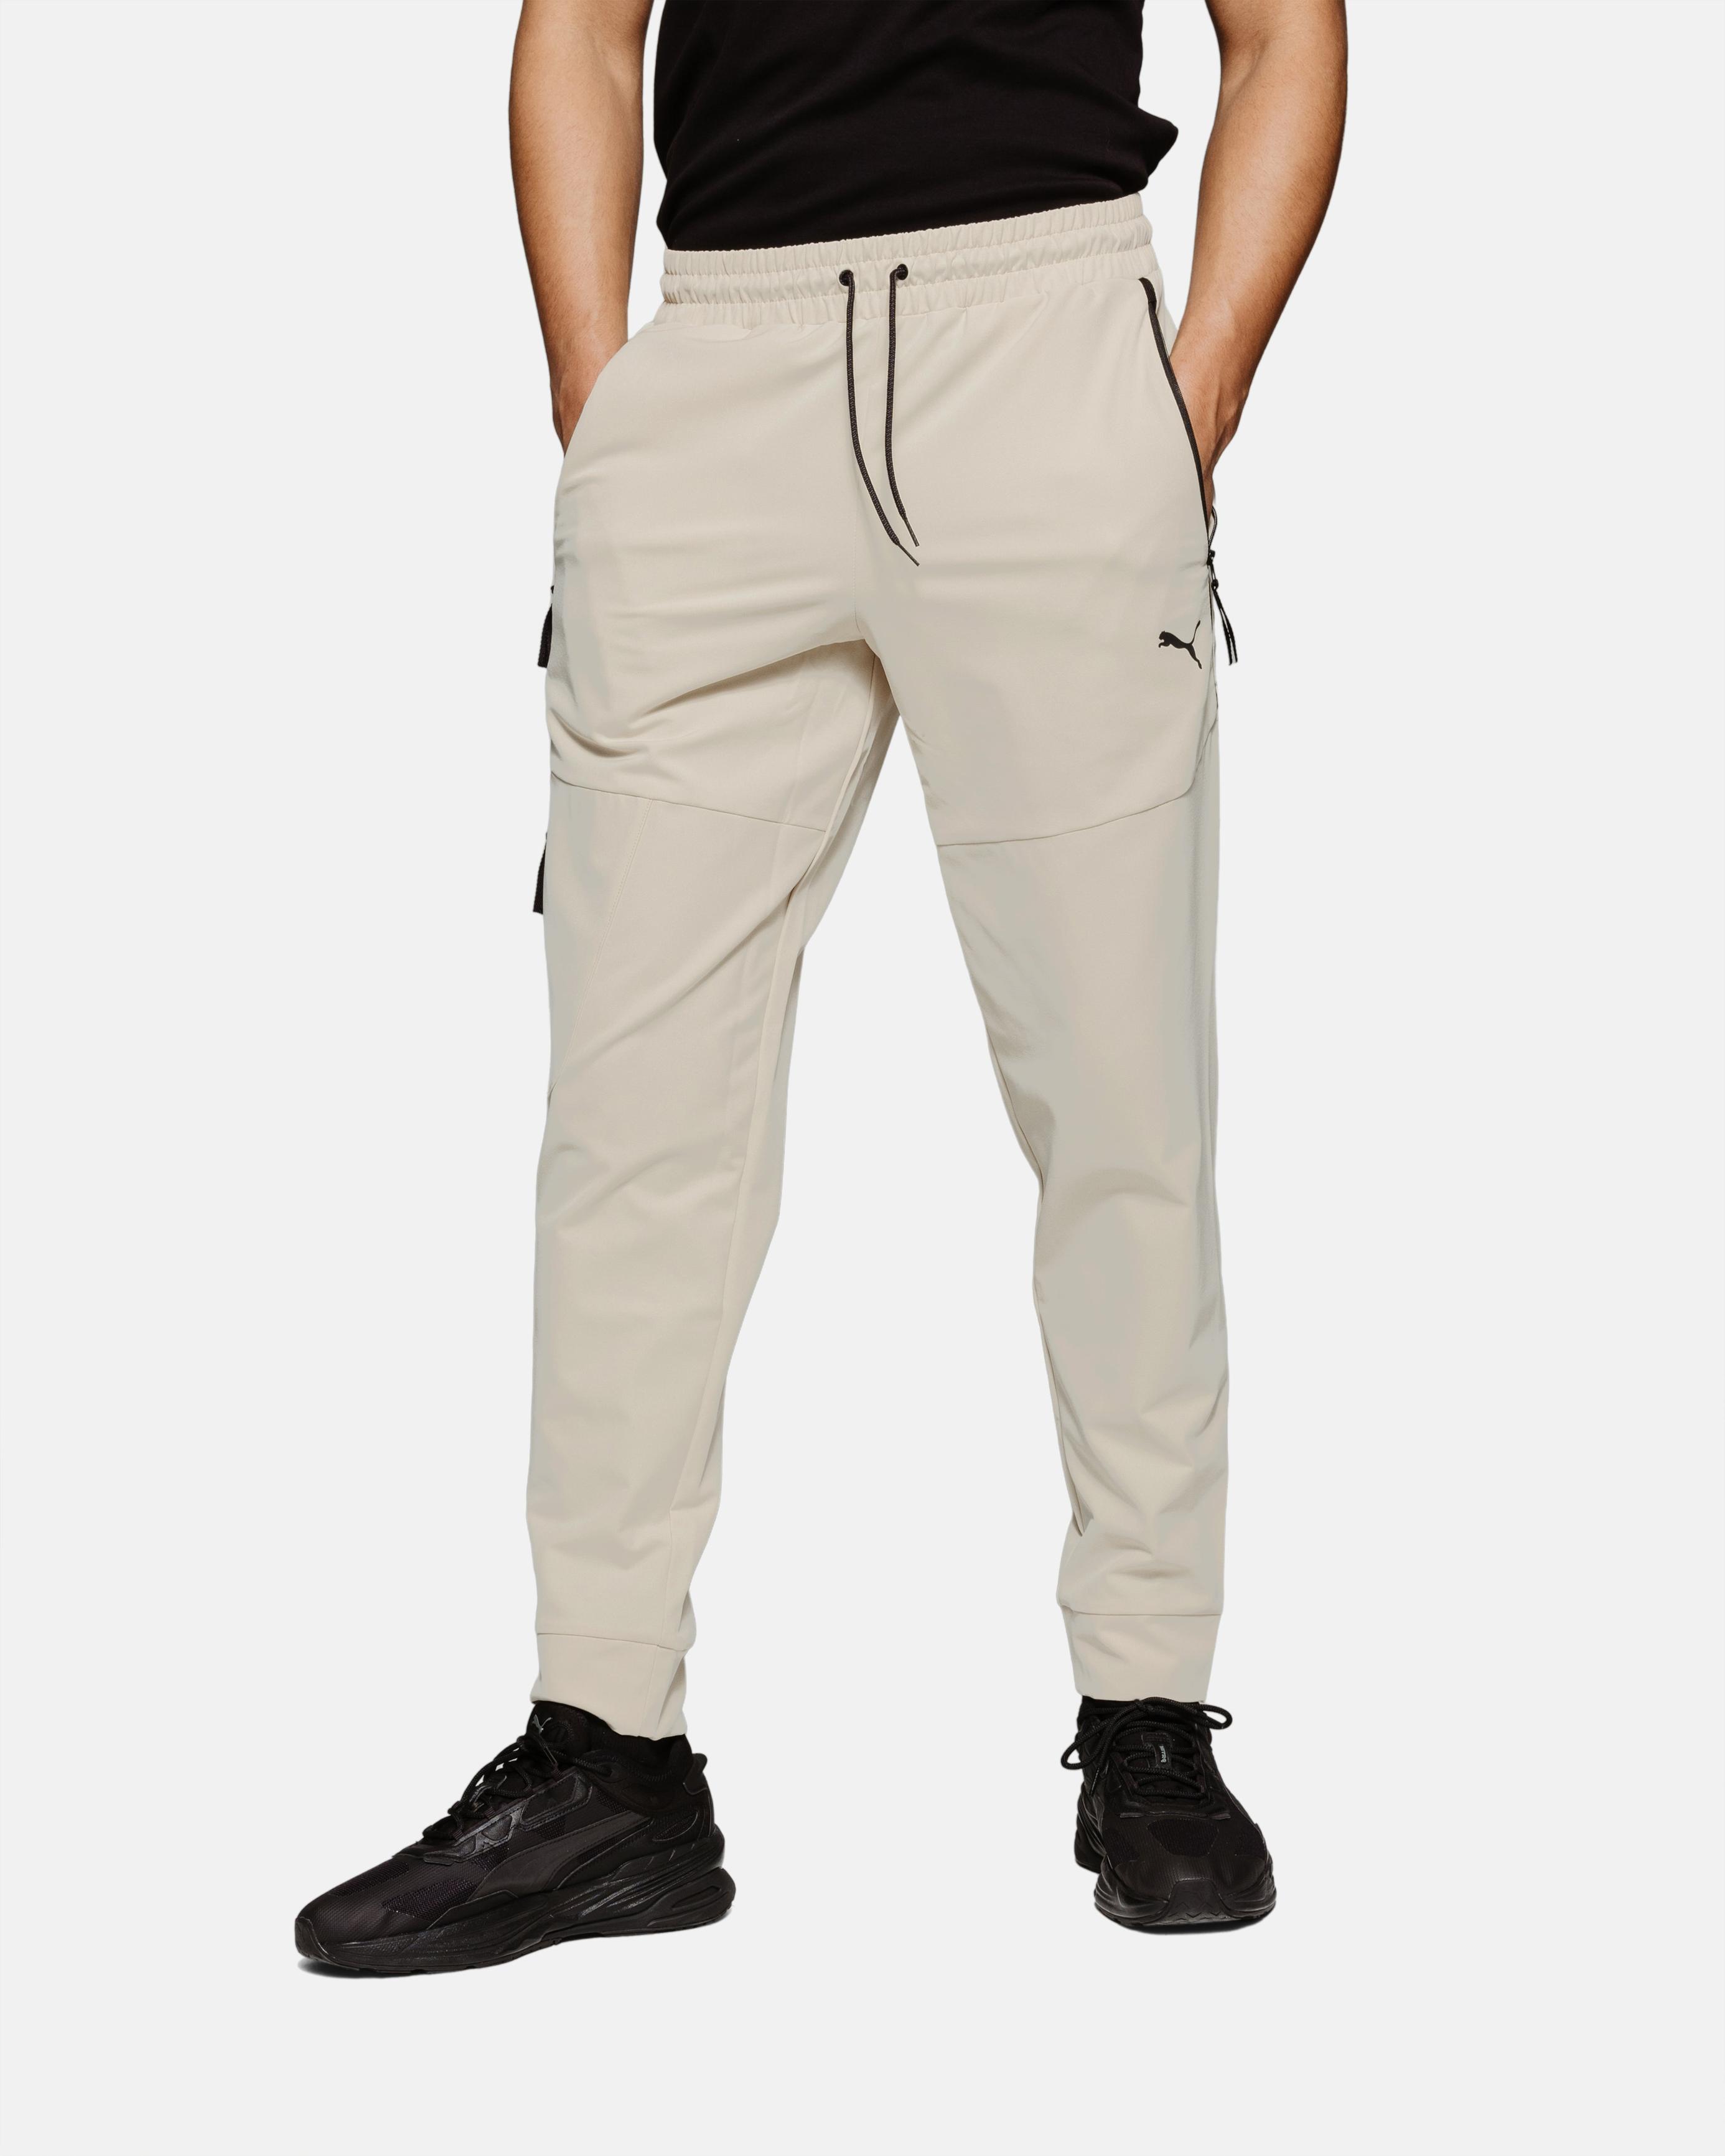 Pantalon Puma Tech - Beige                                        3               couleurs offre à 55,92€ sur Footkorner